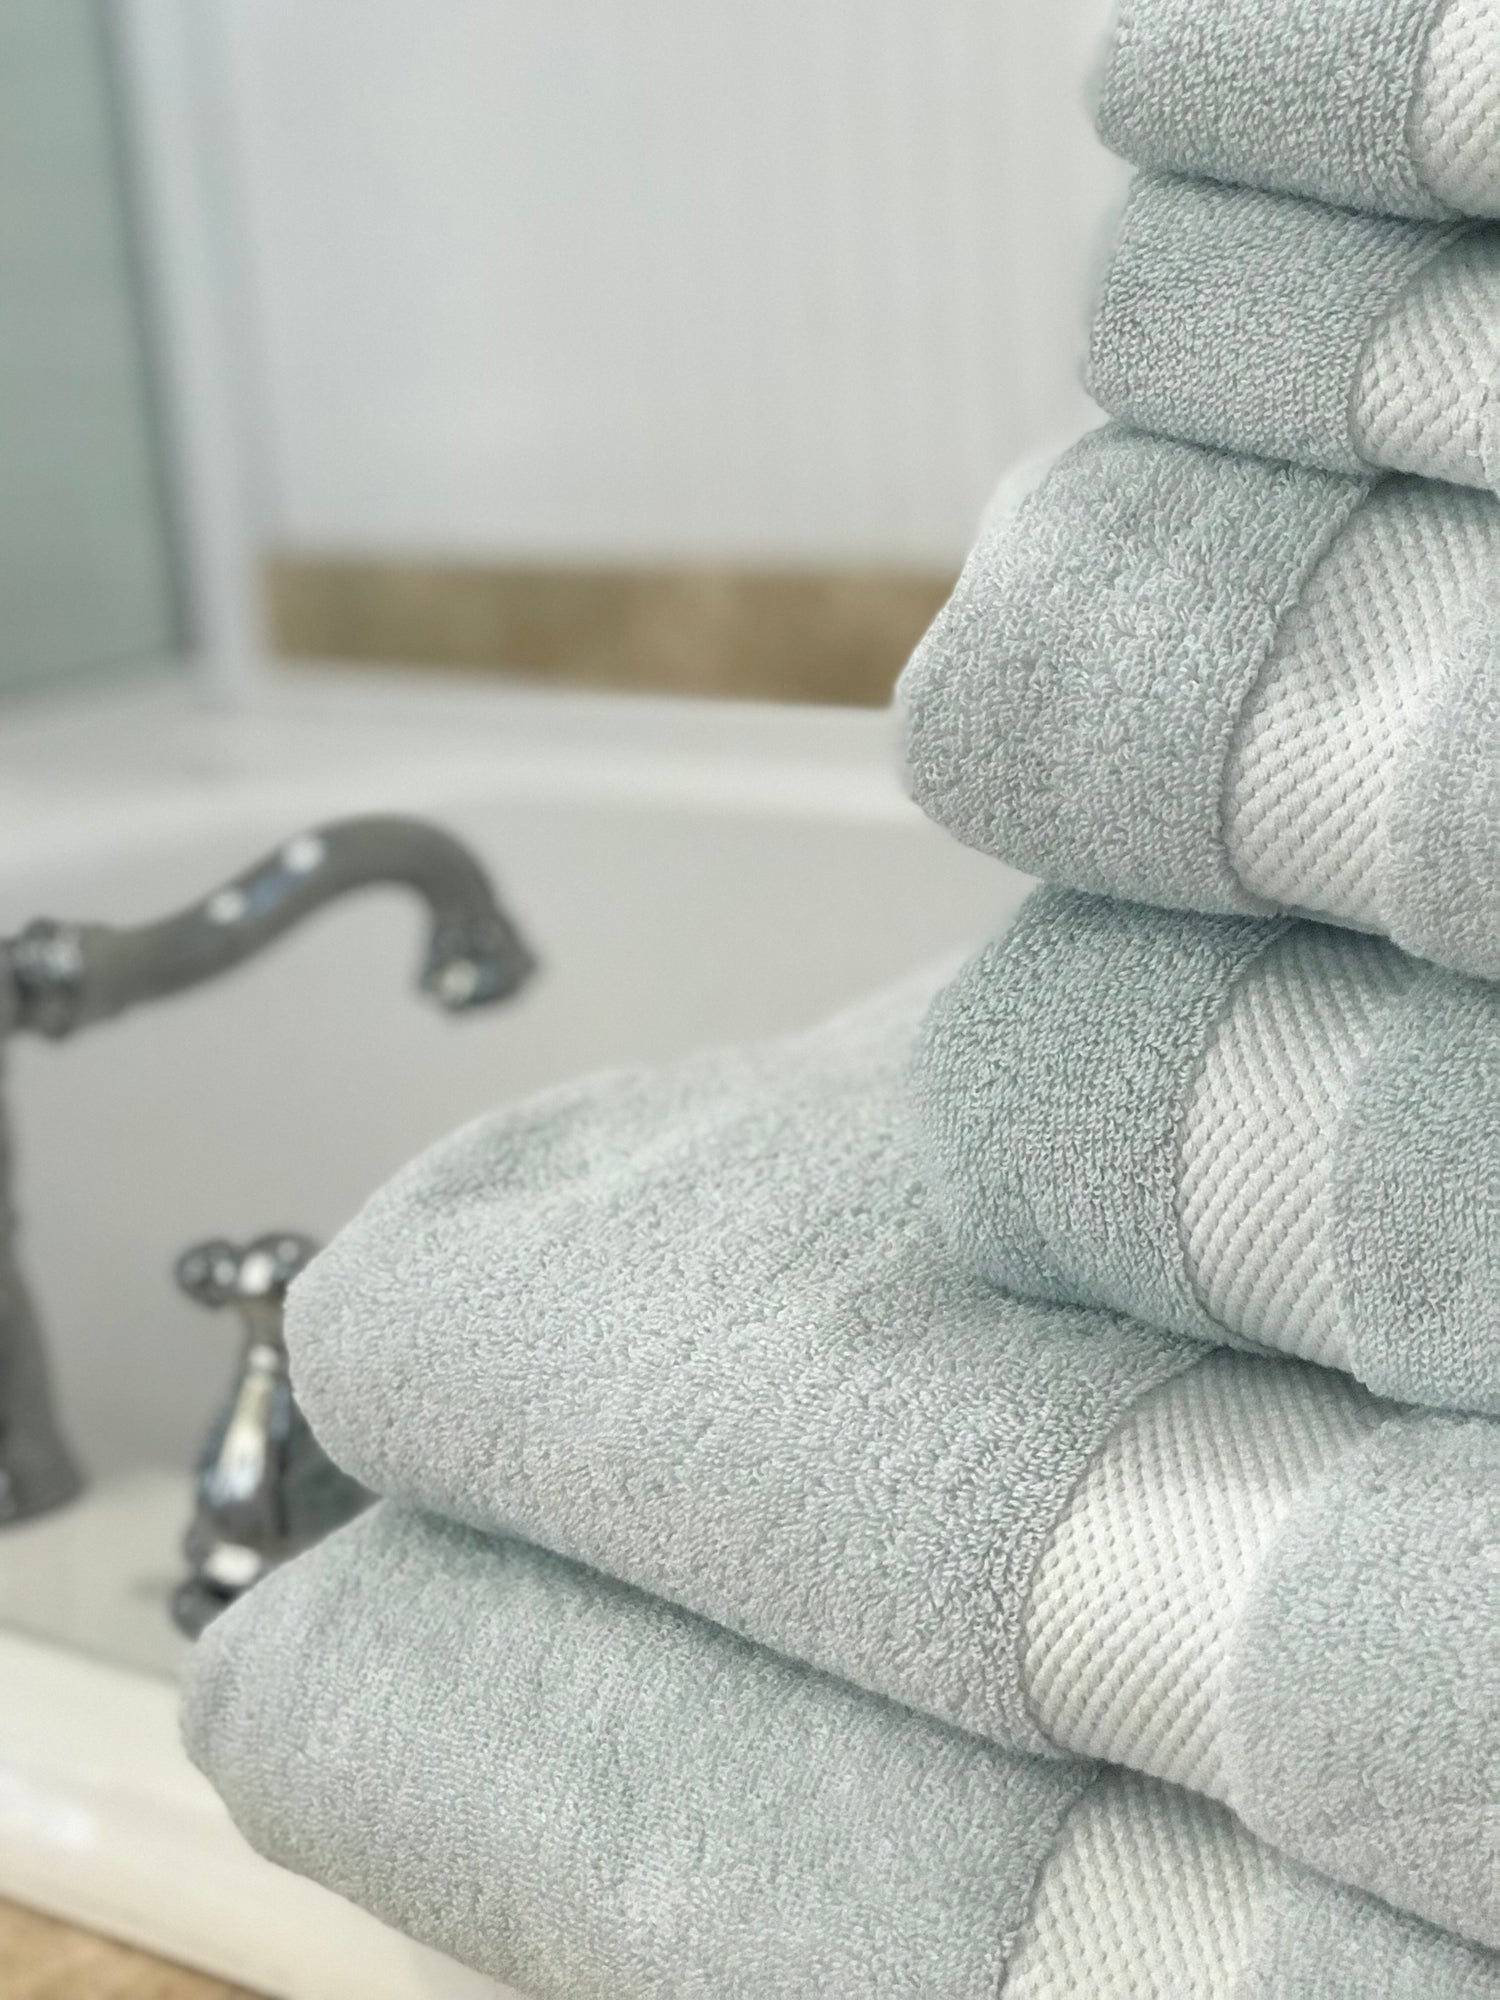 Cozy Organic Cotton Bath Towels - Magnolia Organics